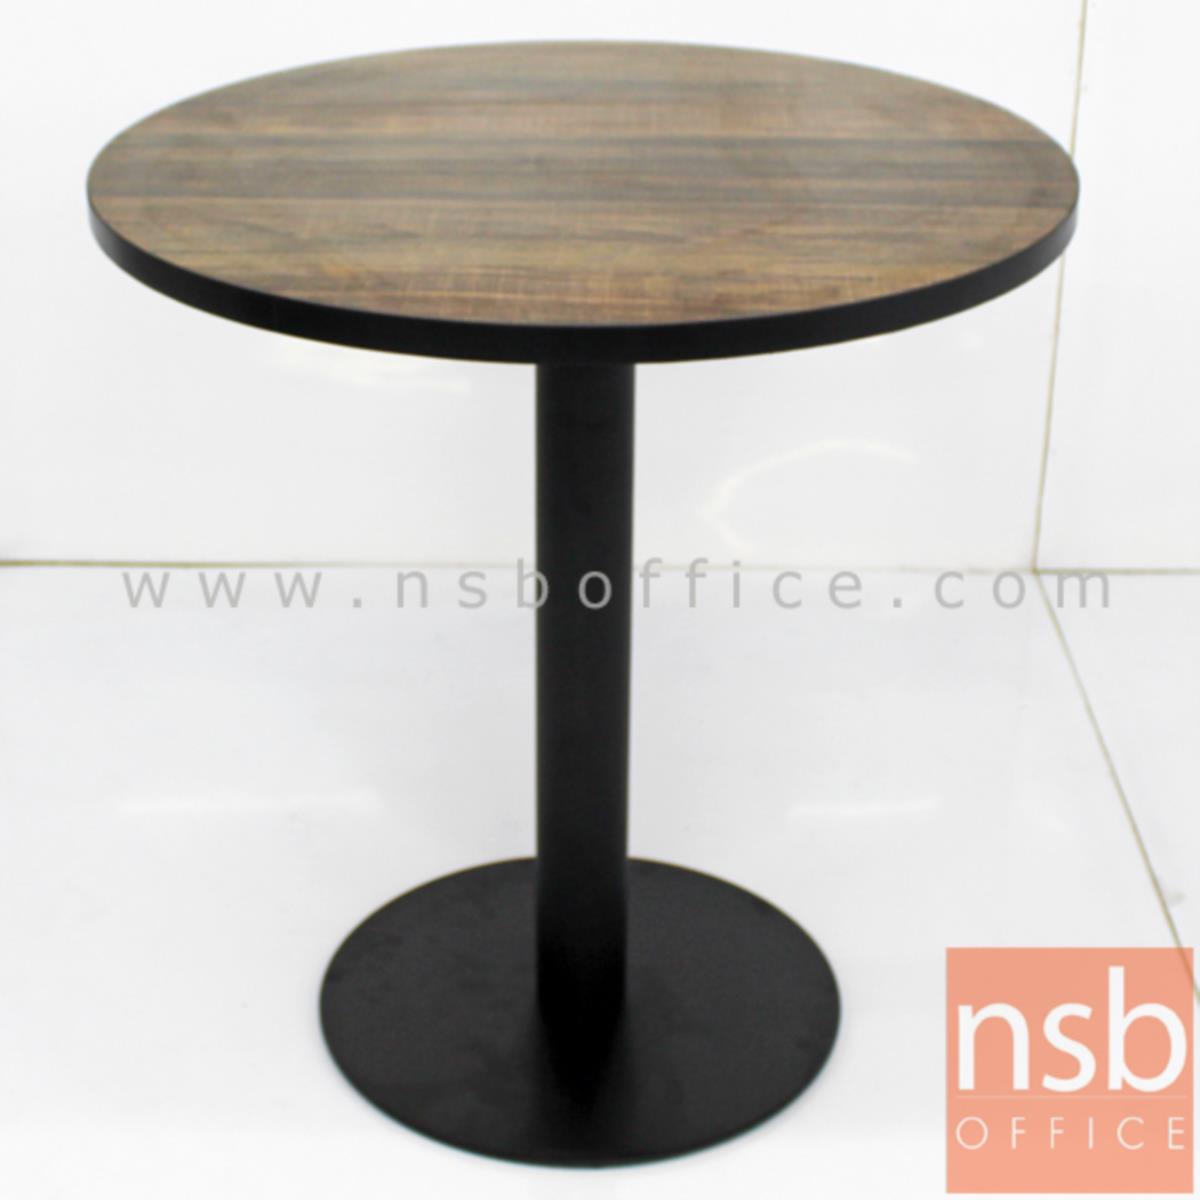 A14A172:โต๊ะบาร์ COFFEE รุ่น Astrid (แอสตริด) ขนาด 60W ,70W ,80W ,60Di ,70Di ,80Di cm.   ขาเหล็กฐานกลมแบนสีดำ